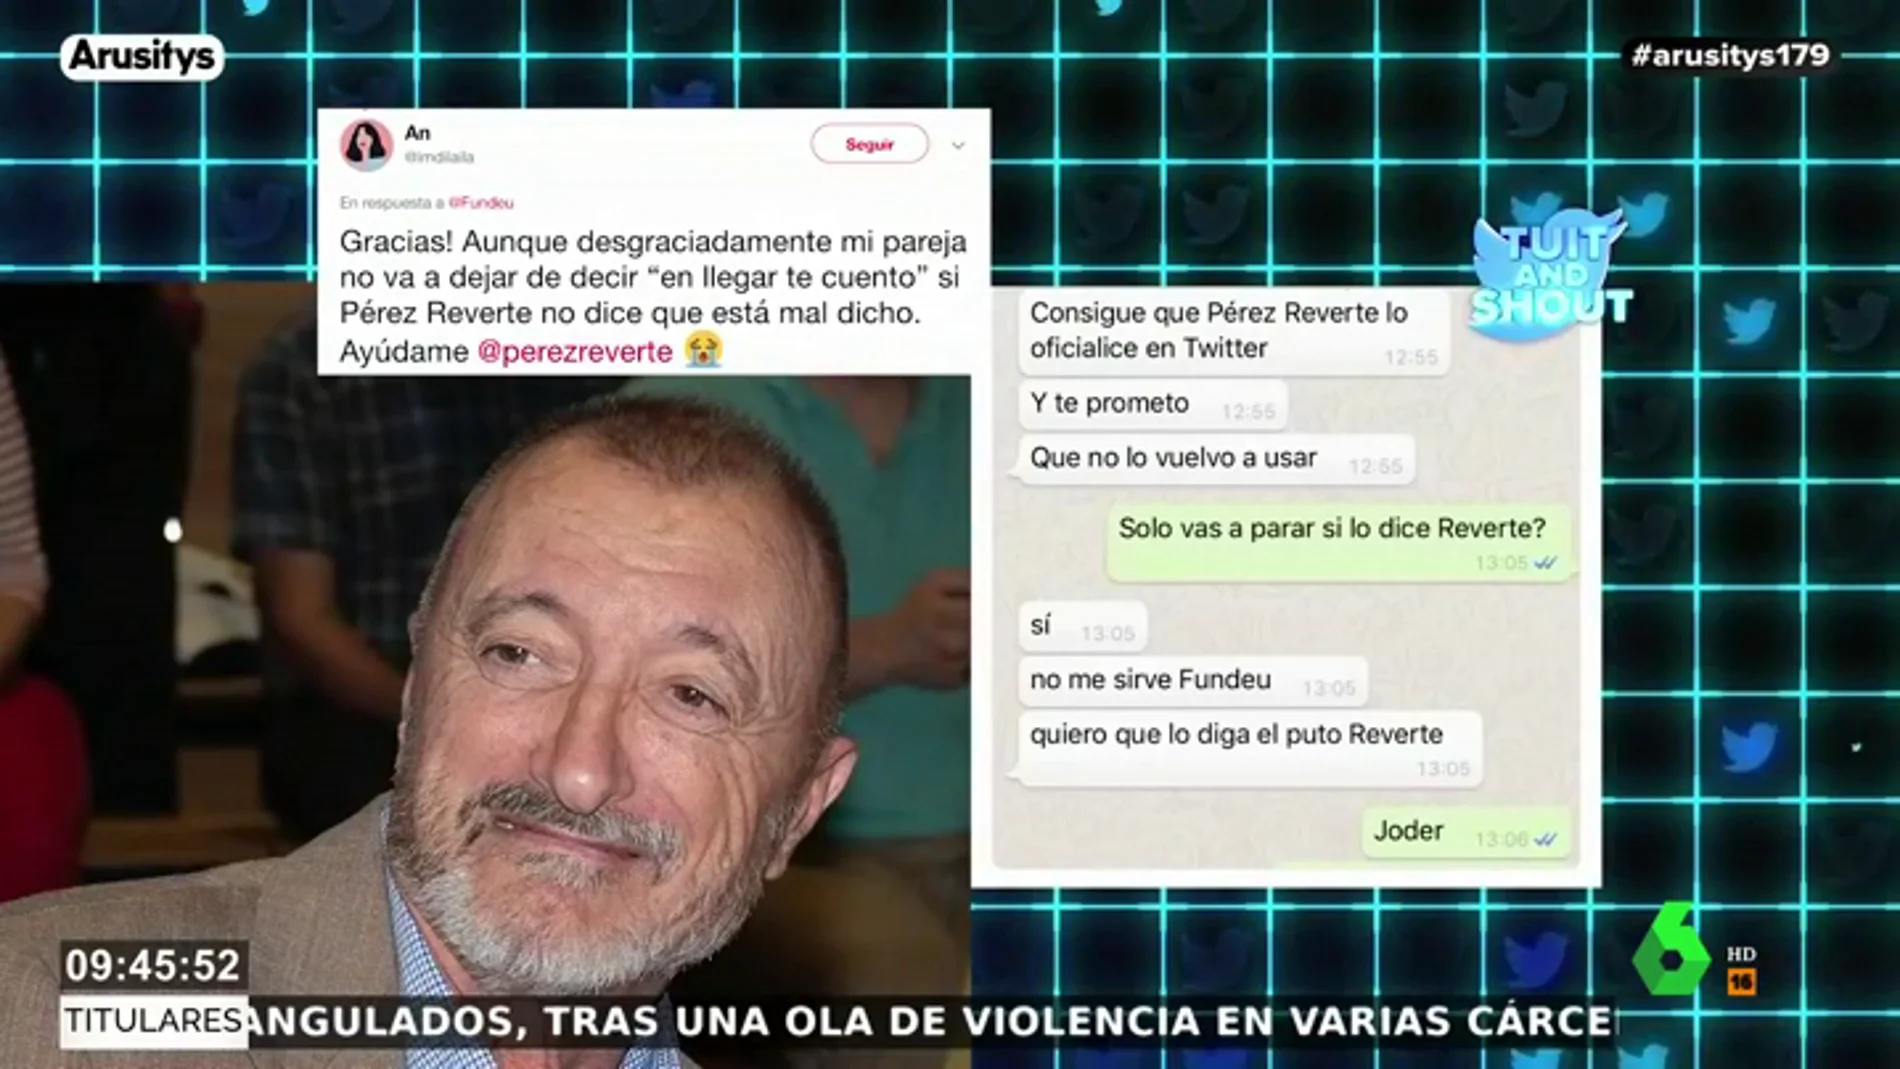 Pérez-Reverte media en la discusión de una pareja en Twitter: "Dele una colleja de mi parte, que no se repita"